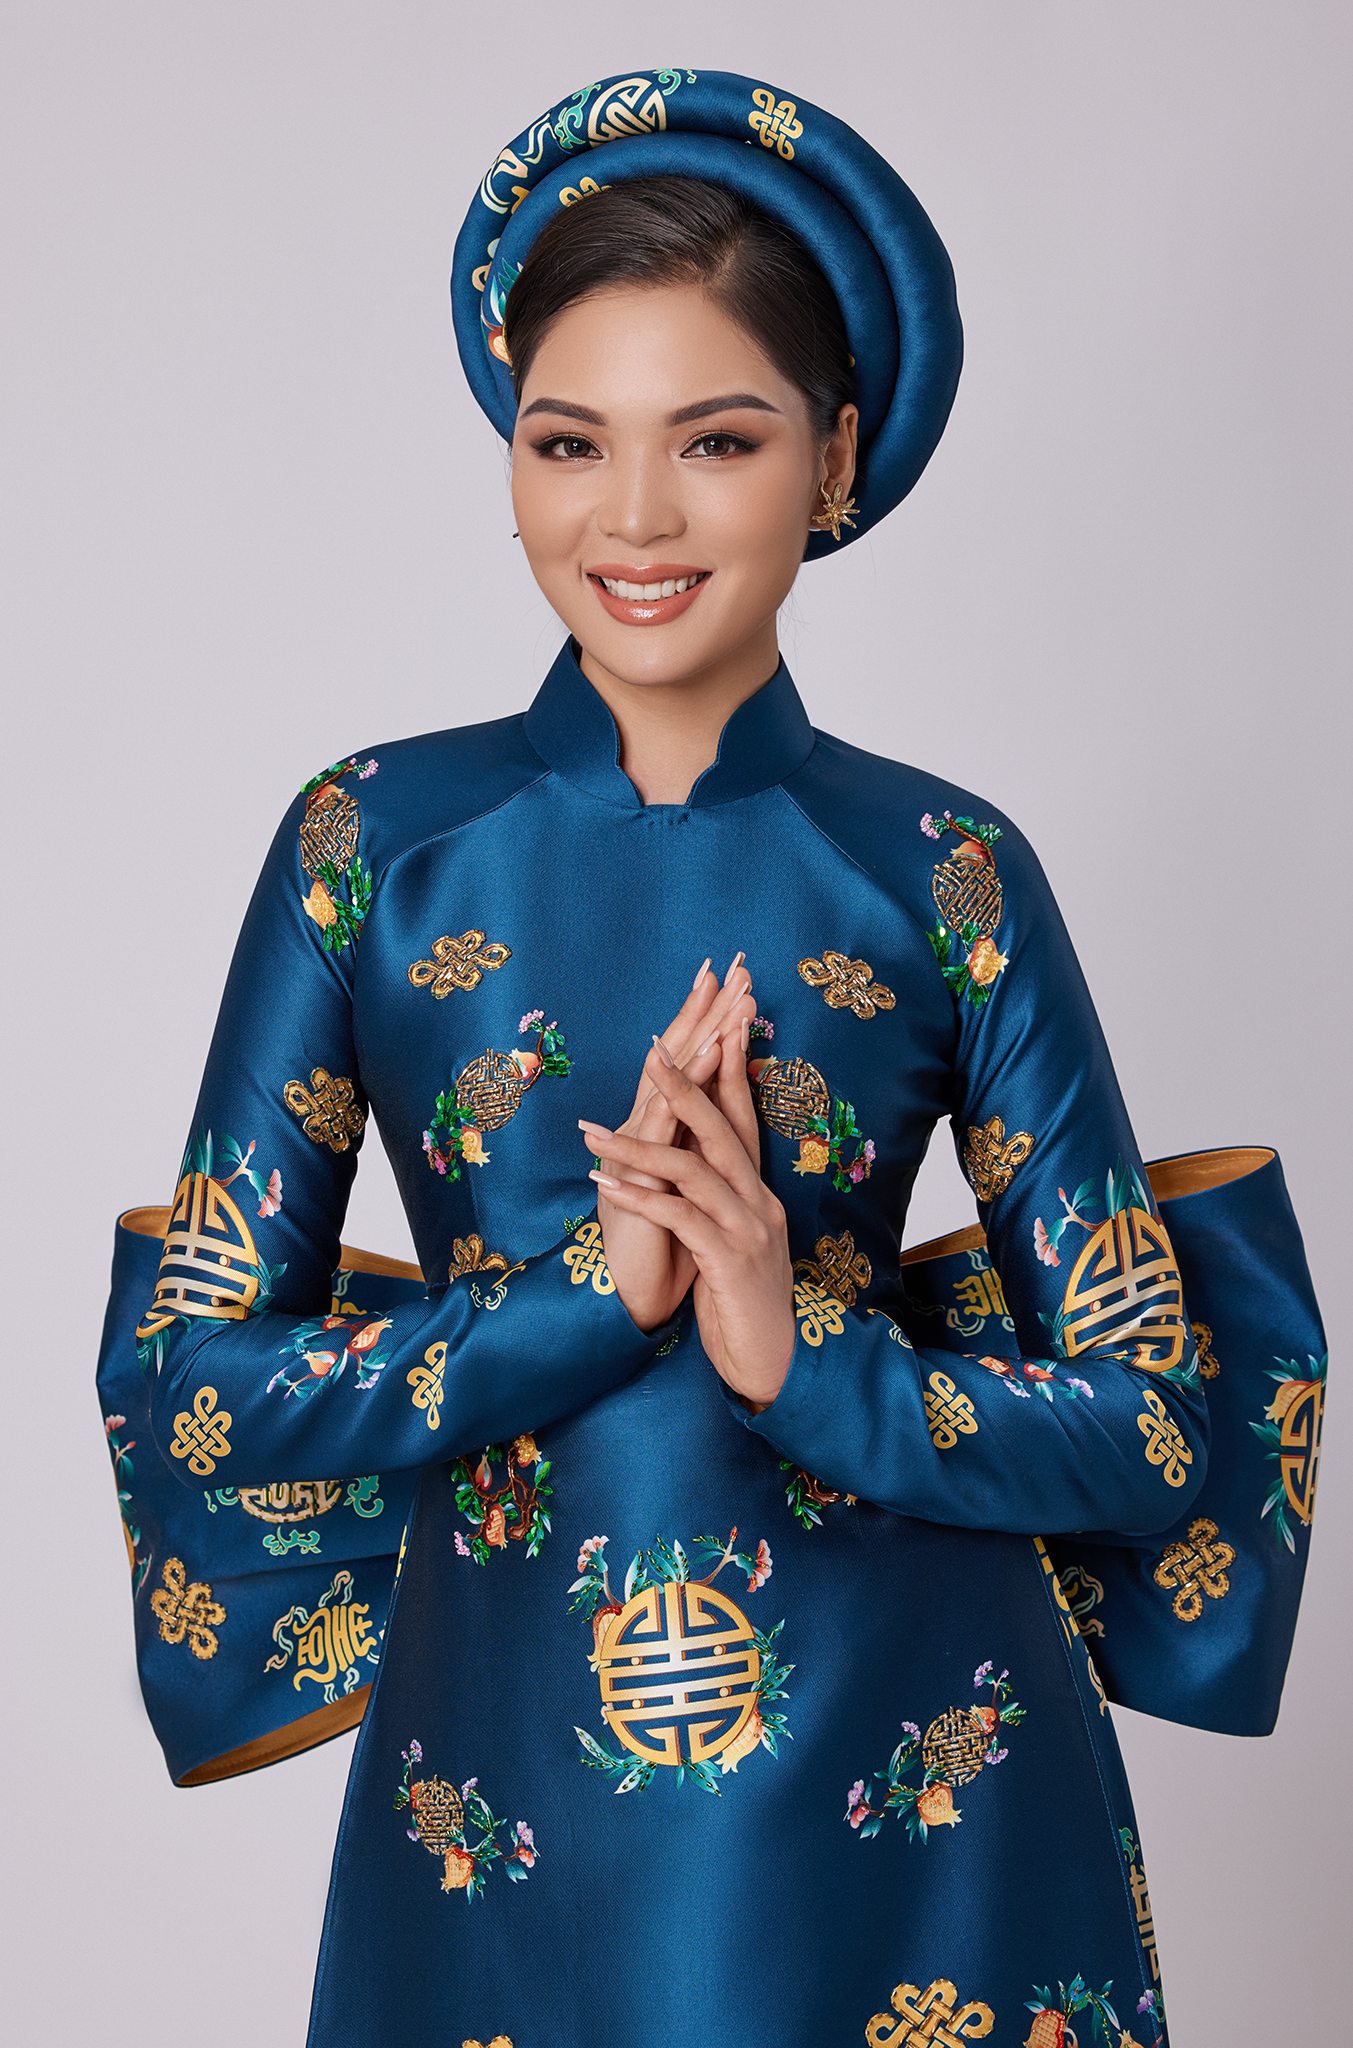 “Tôi mong muốn tạo ra những trang phục truyền thống tôn vinh người phụ nữ Việt Nam, tôn vinh những giá trị văn hóa dân gian Việt”, NTK Vũ Lan Anh cho biết.  Những màu sắc tươi tắn, hoạ tiết tươi vui trên áo như thể hiện sức sống mới của mùa xuân với tràn đầy sự hy vọng.